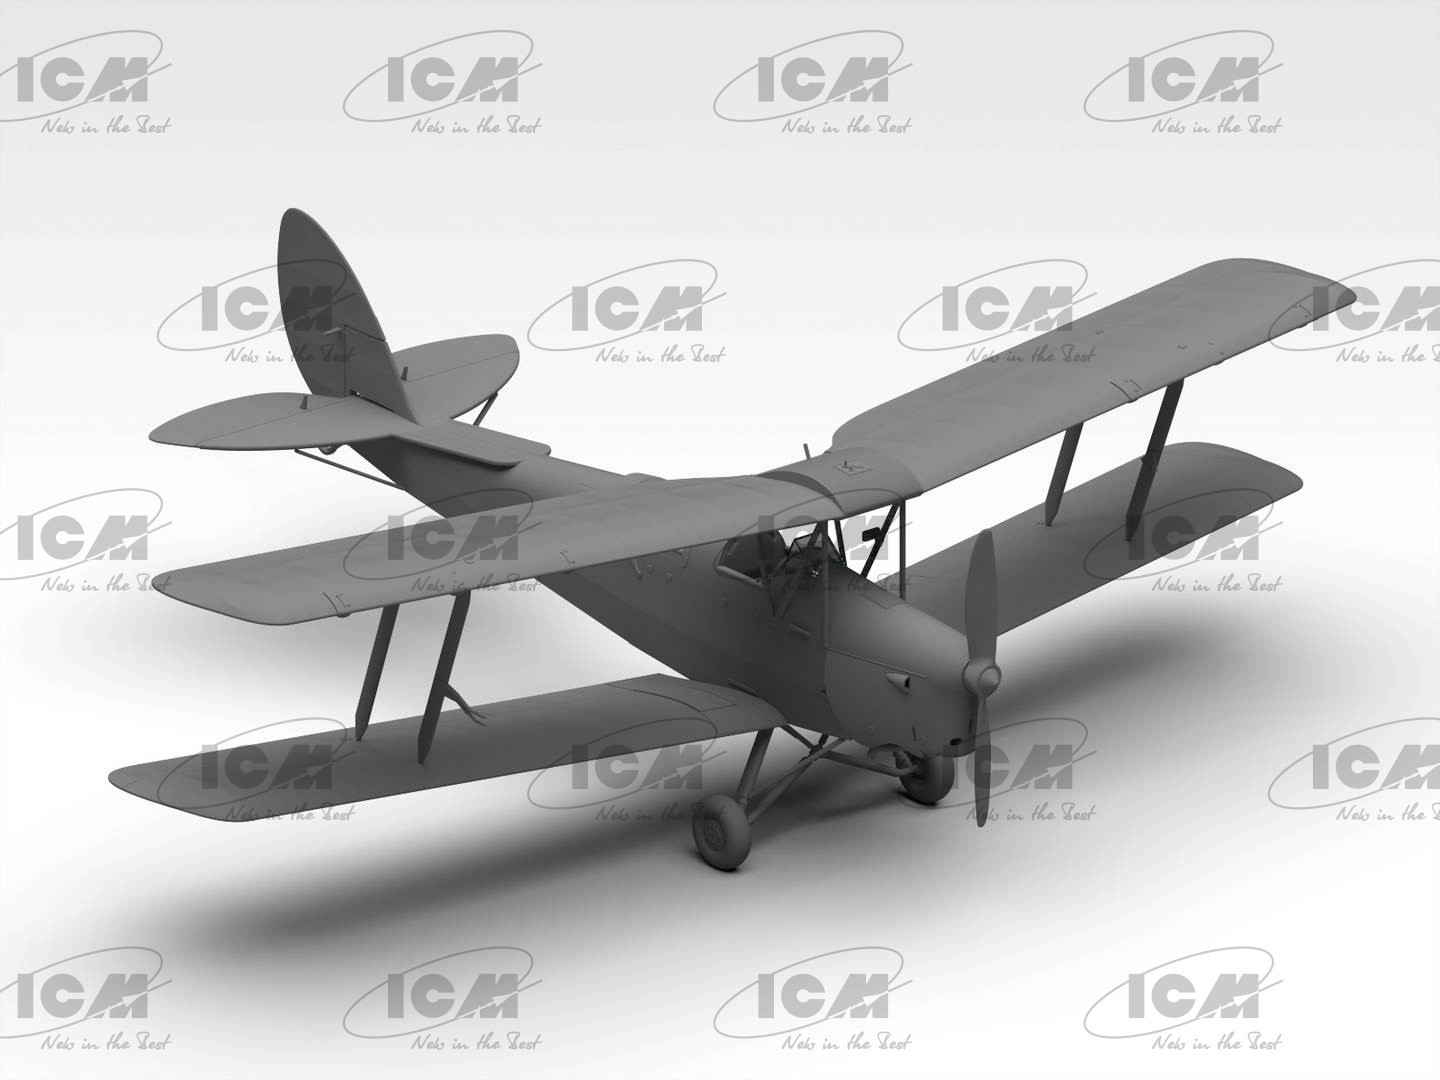 ICM 32035 1/32  DH. 82A Tiger Moth EĞİTİM UÇAĞI MAKETİ